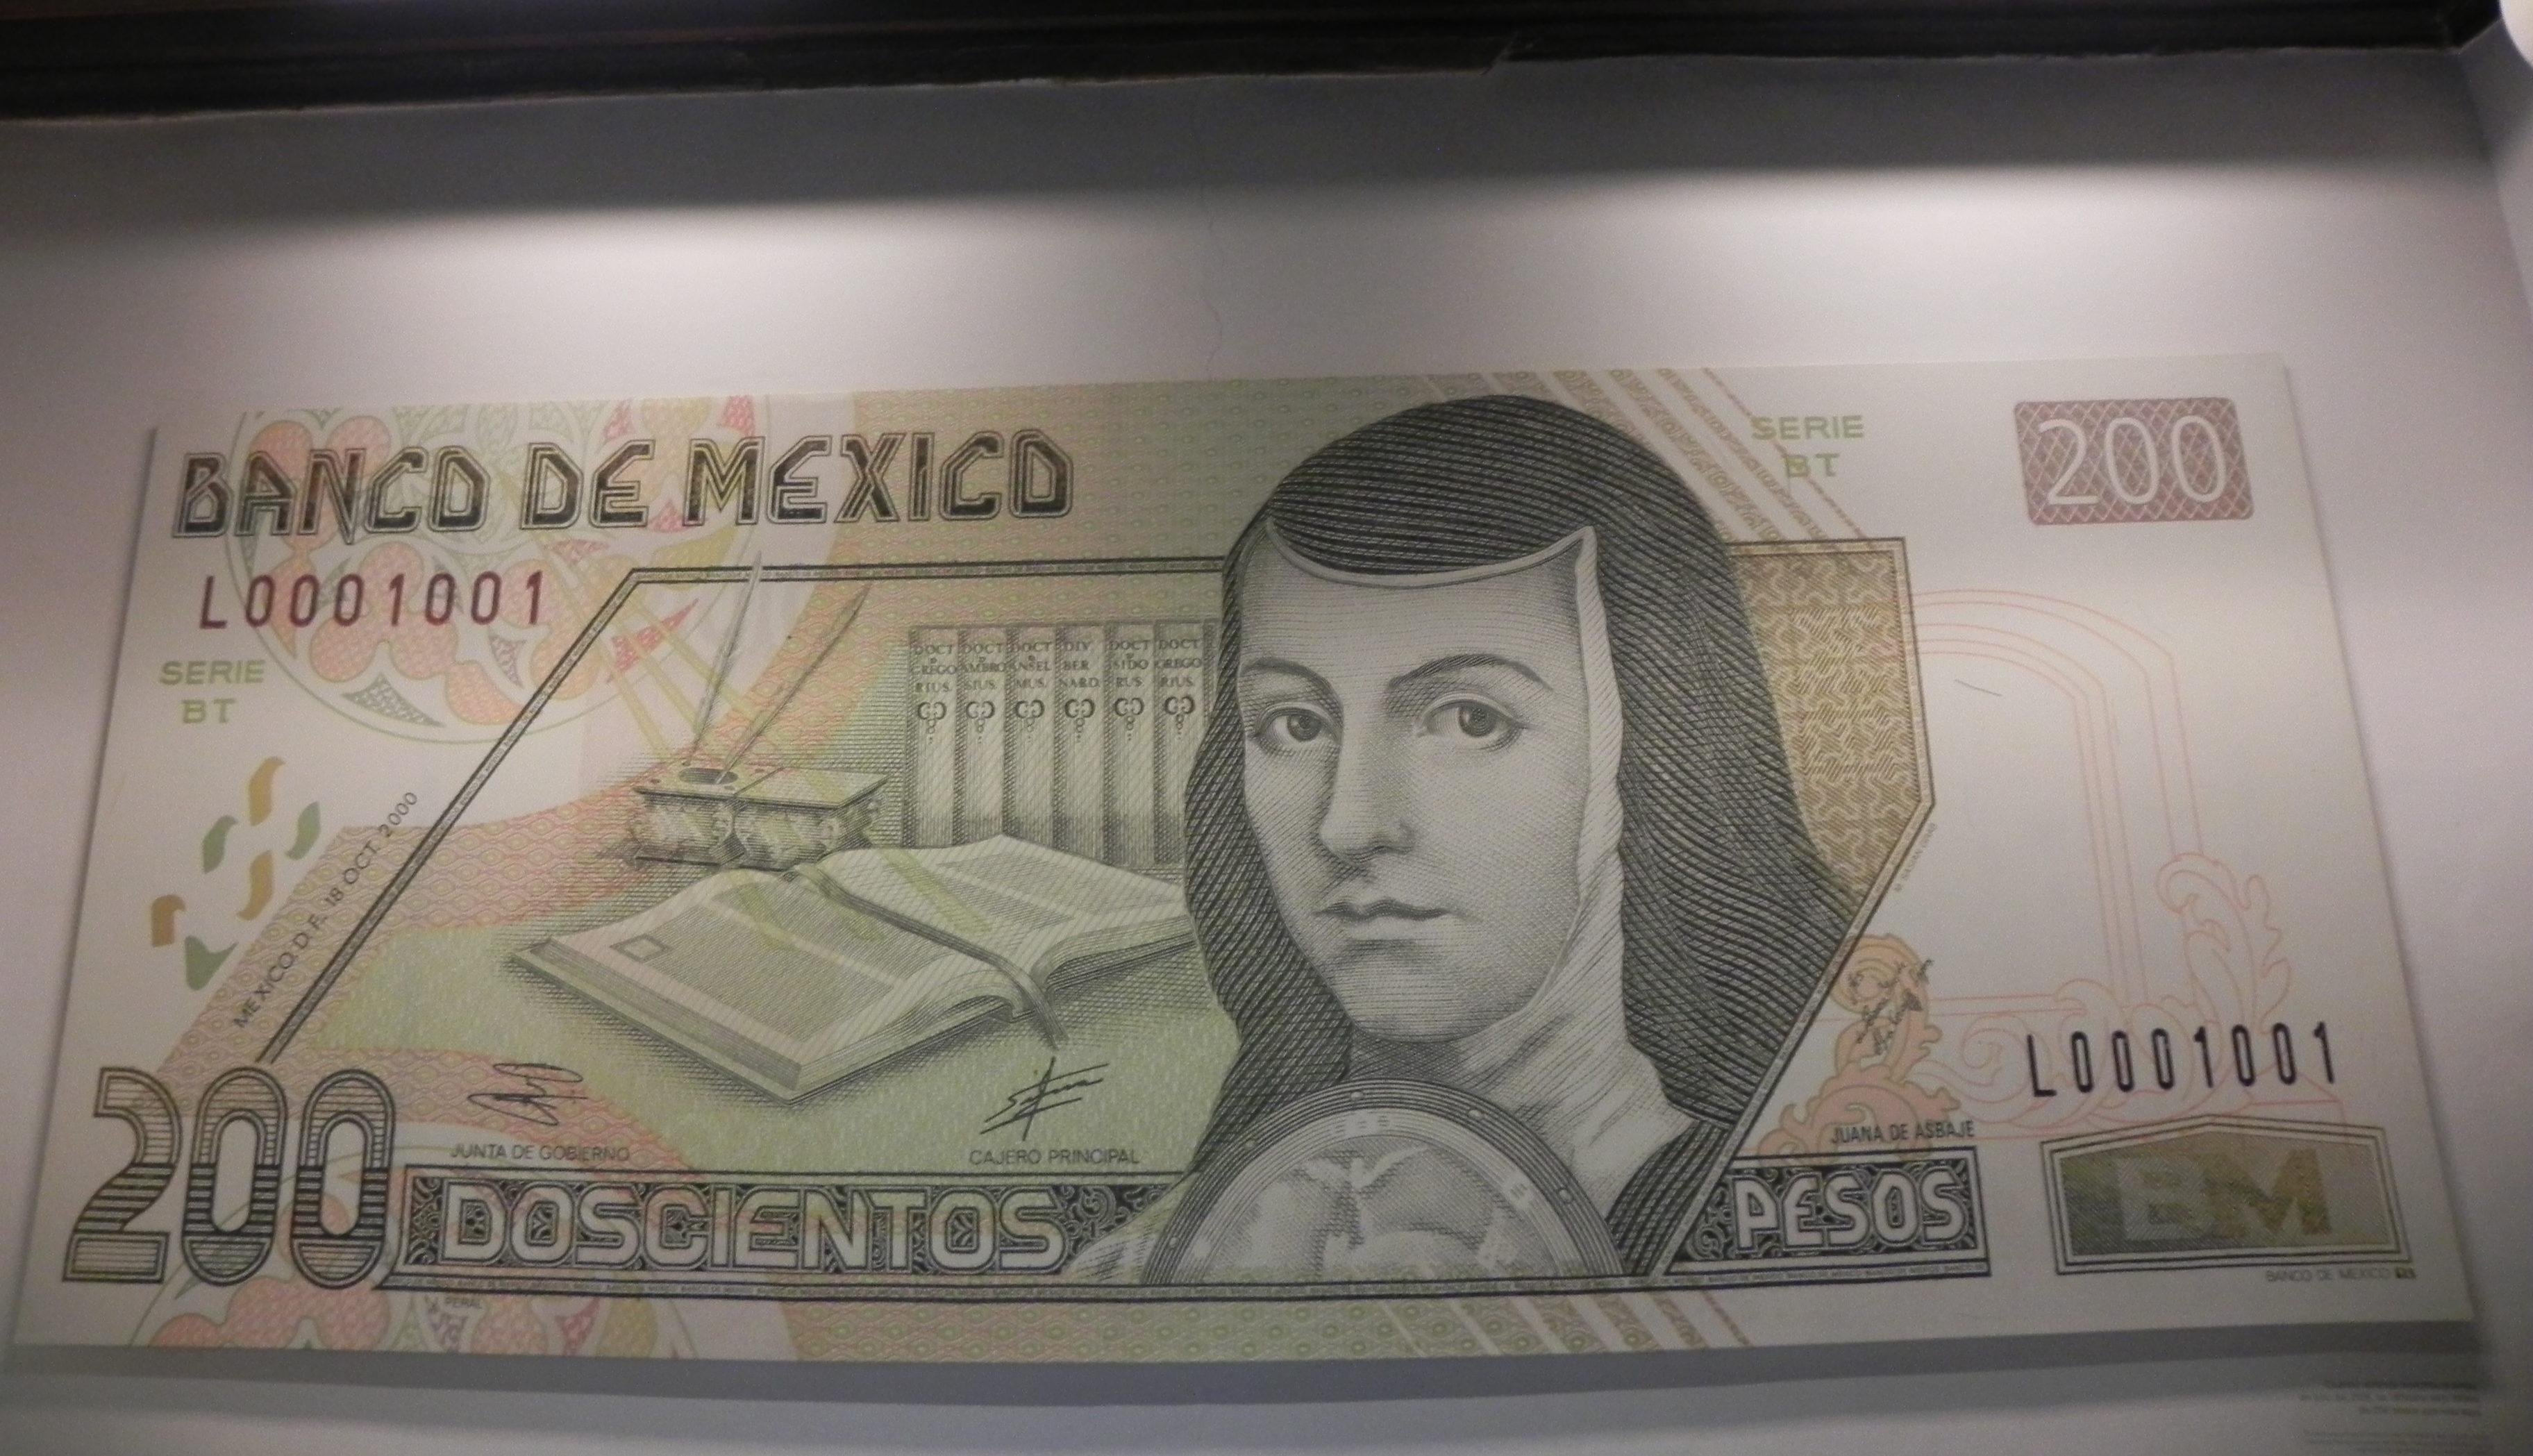 Confirma Banxico circulación de nuevo billete de 200 pesos en segundo semestre